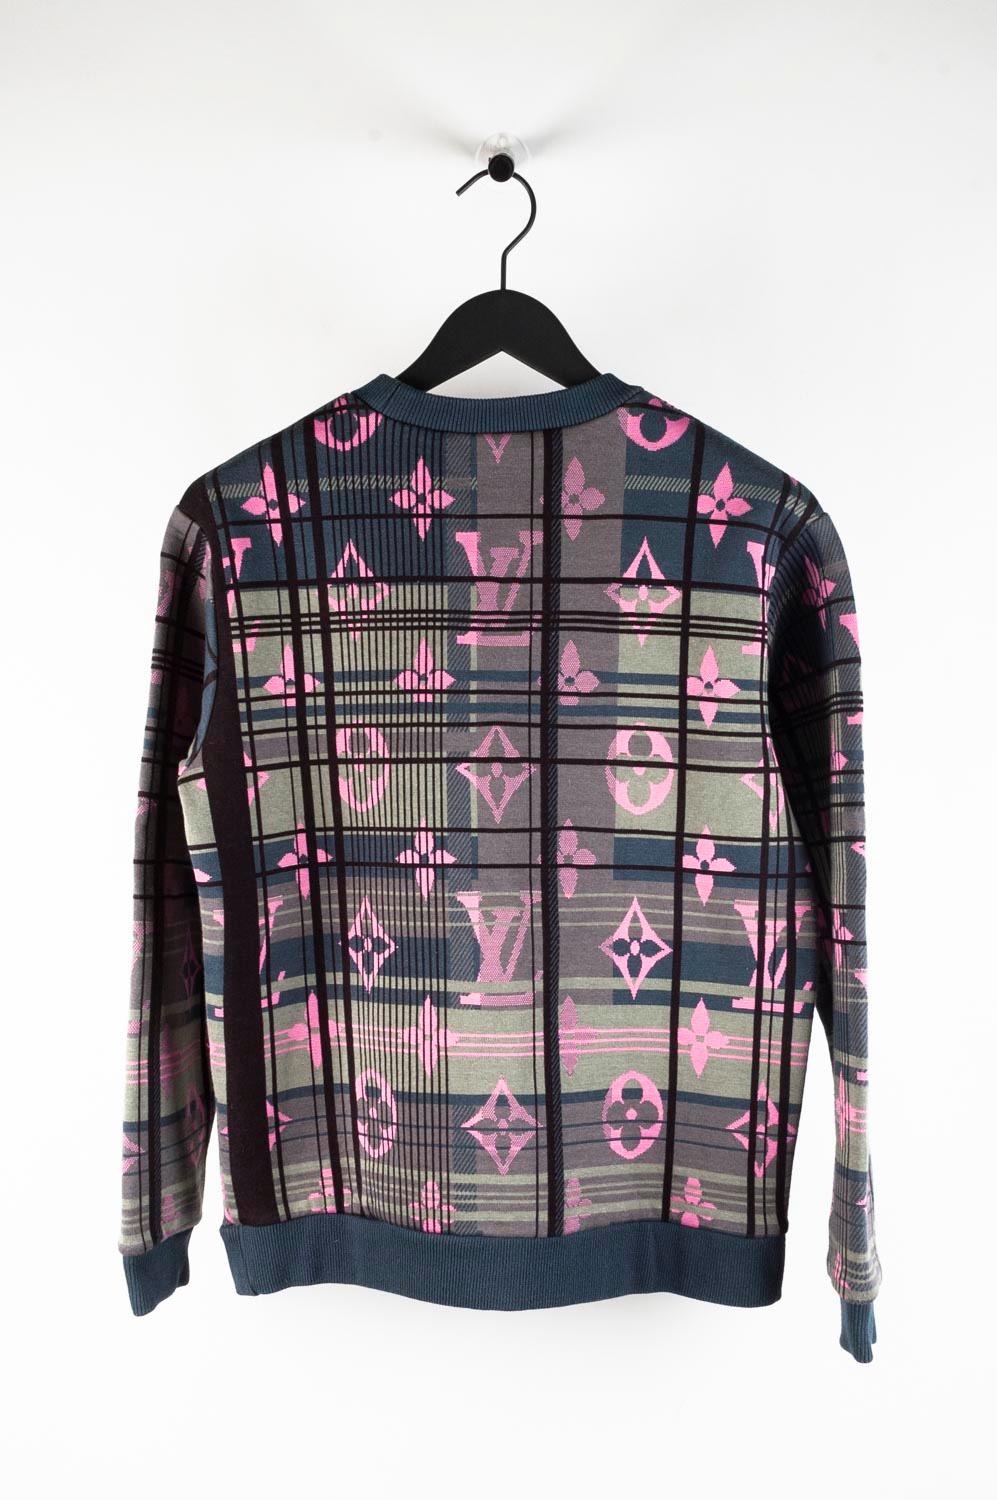 Louis Vuitton Jumper Herren Sweatshirt Top Größe M S521 2